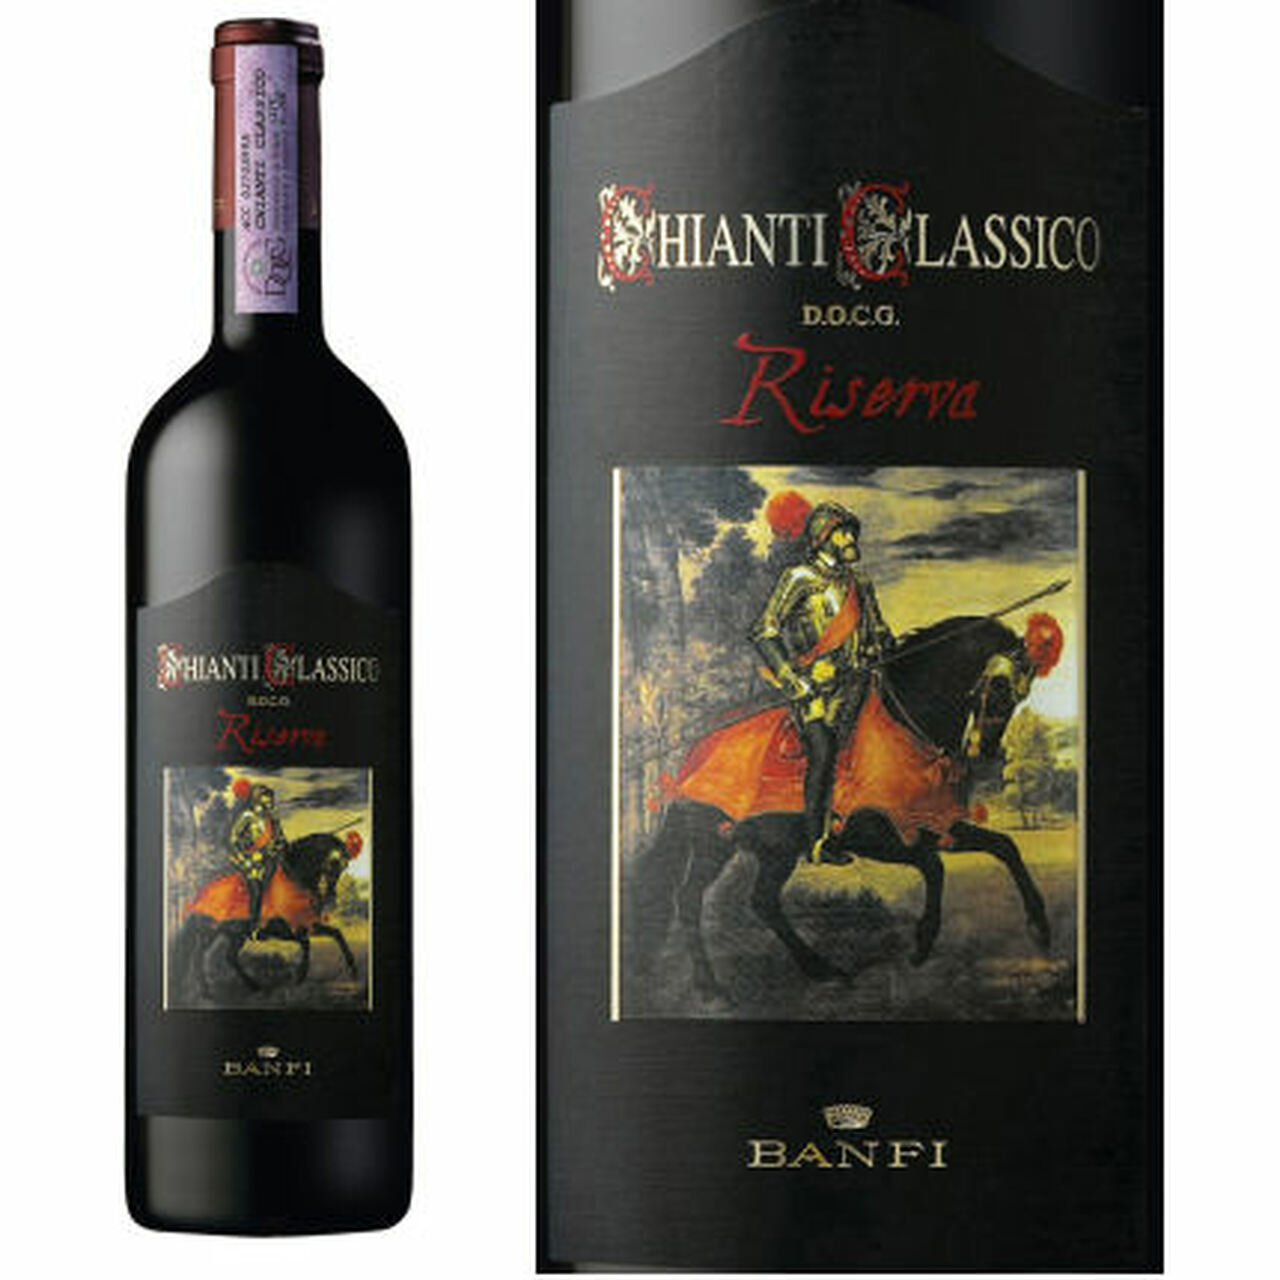 Banfi Chianti Classico Riserva 2011 - 750ML